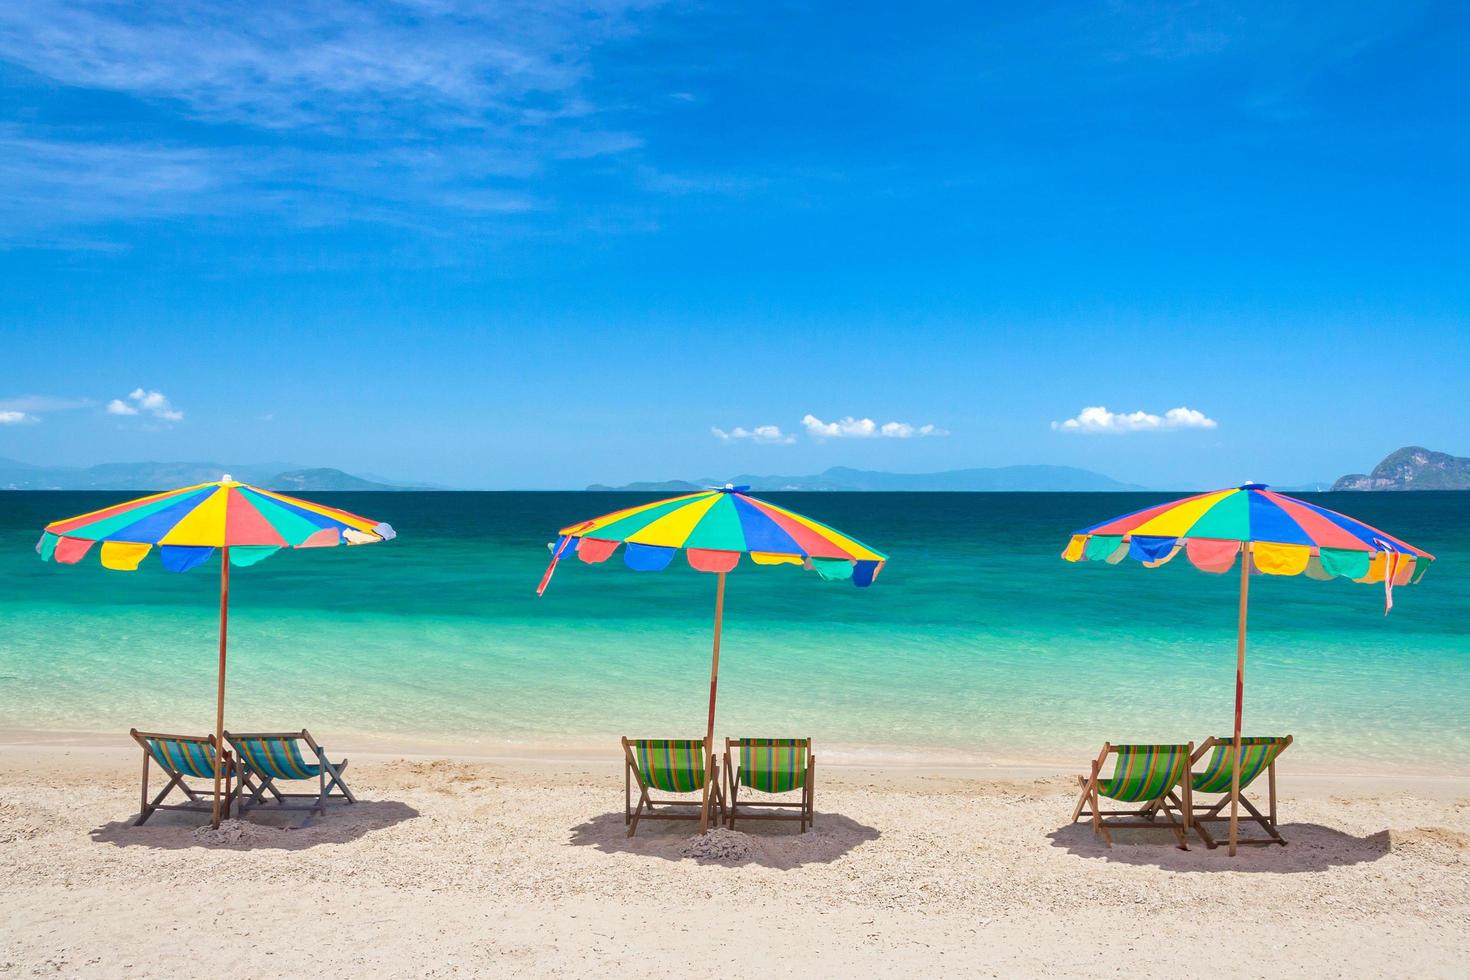 kleurrijke strandstoelen met parasols zomervakantie, phuket eiland thailand foto